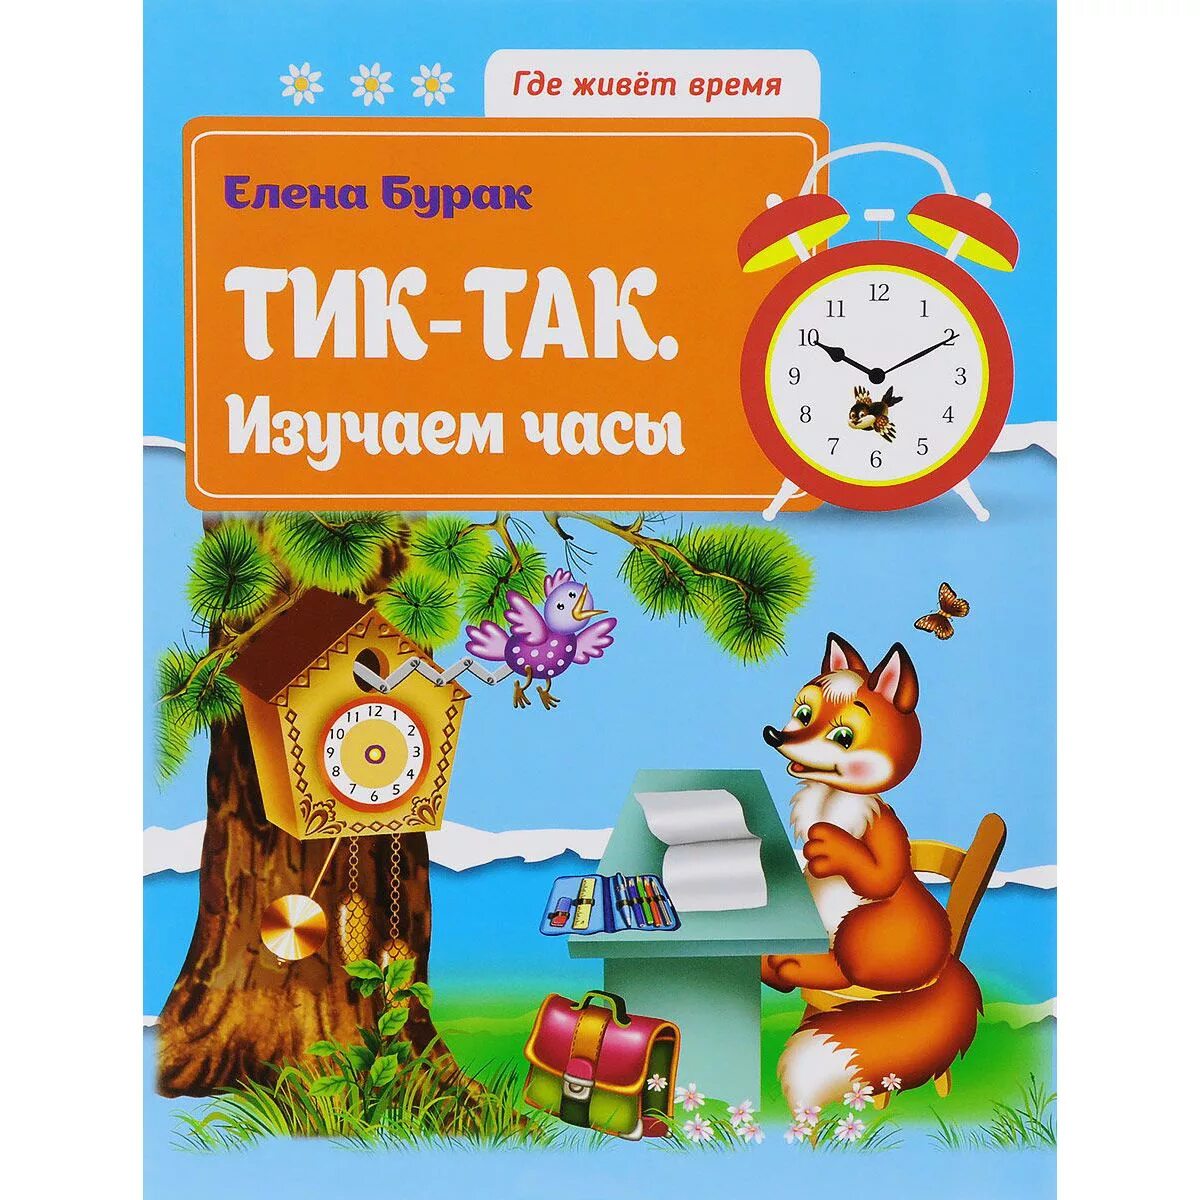 Детская книга про часы. Часы книжка. Тик-так изучаем часы. Книги про часы для детей.